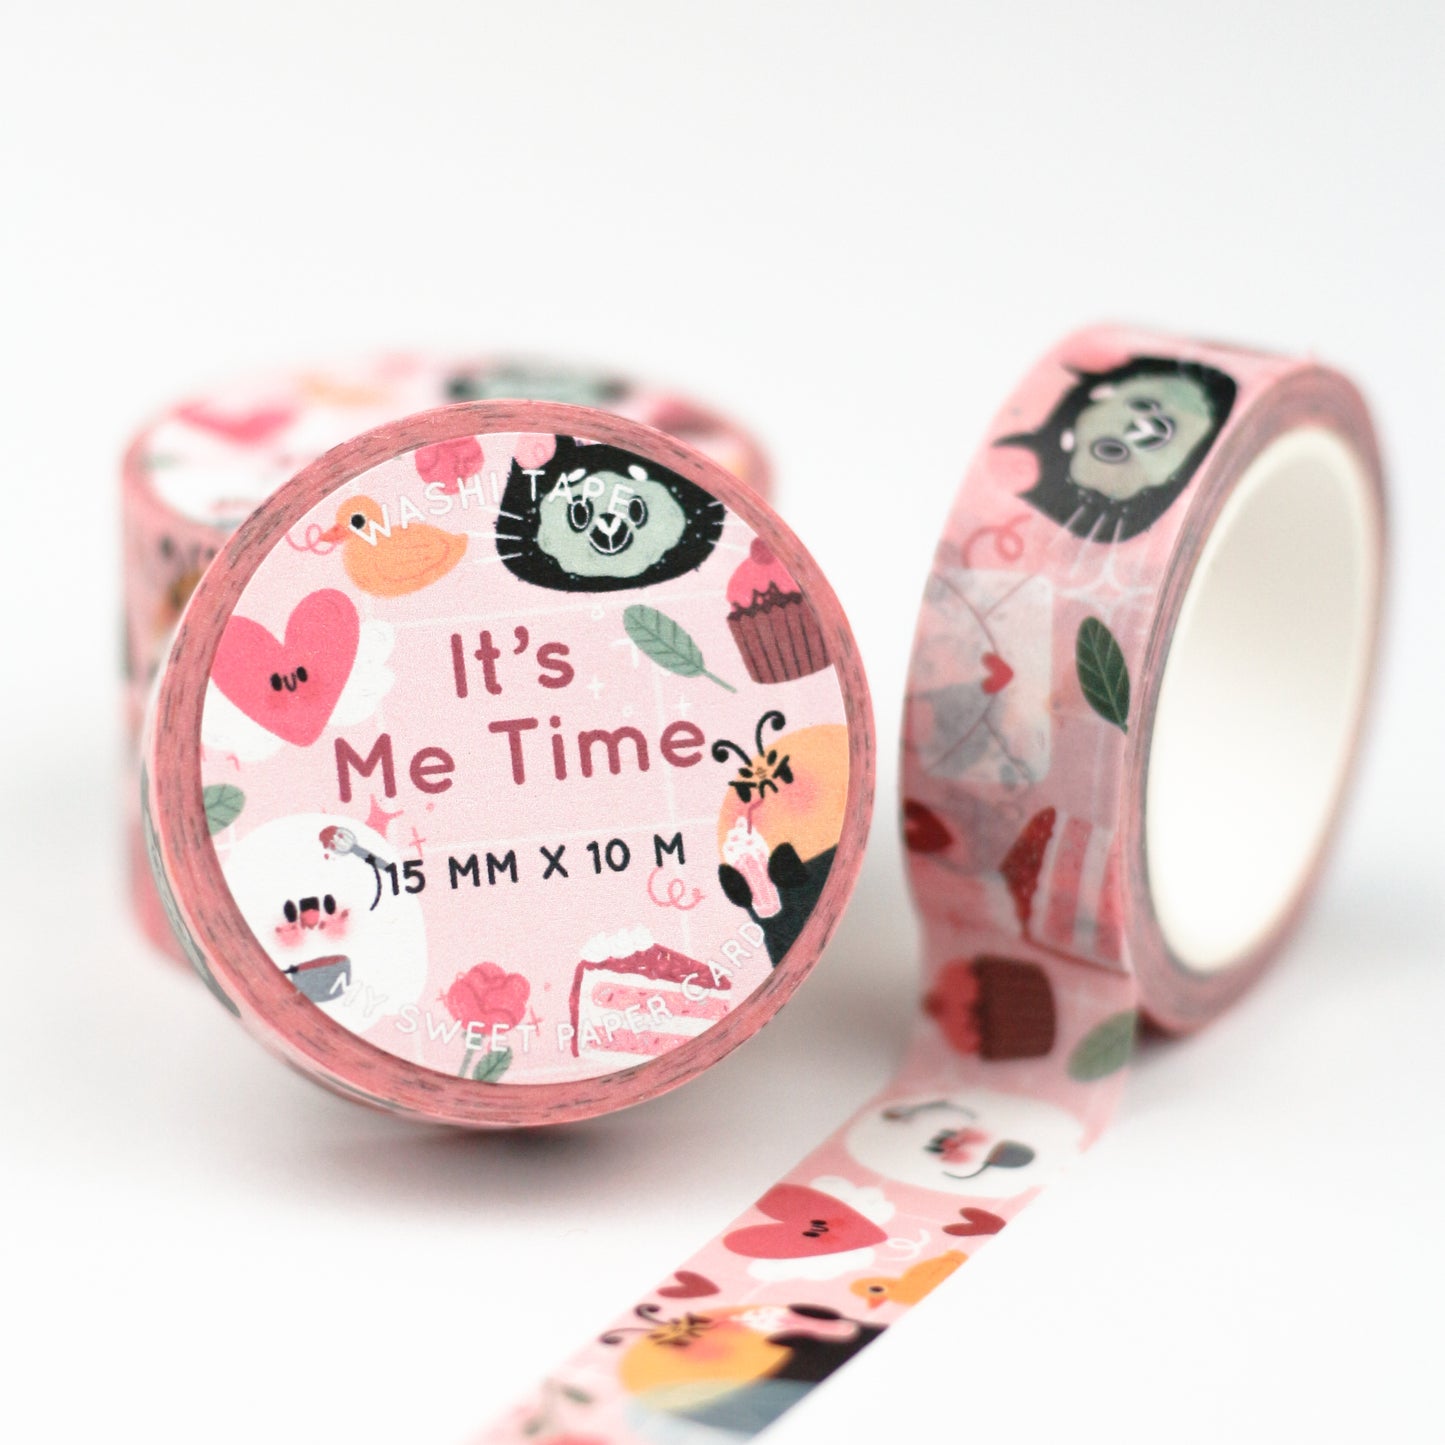 Me Time - Washi Tape Saint Valentin